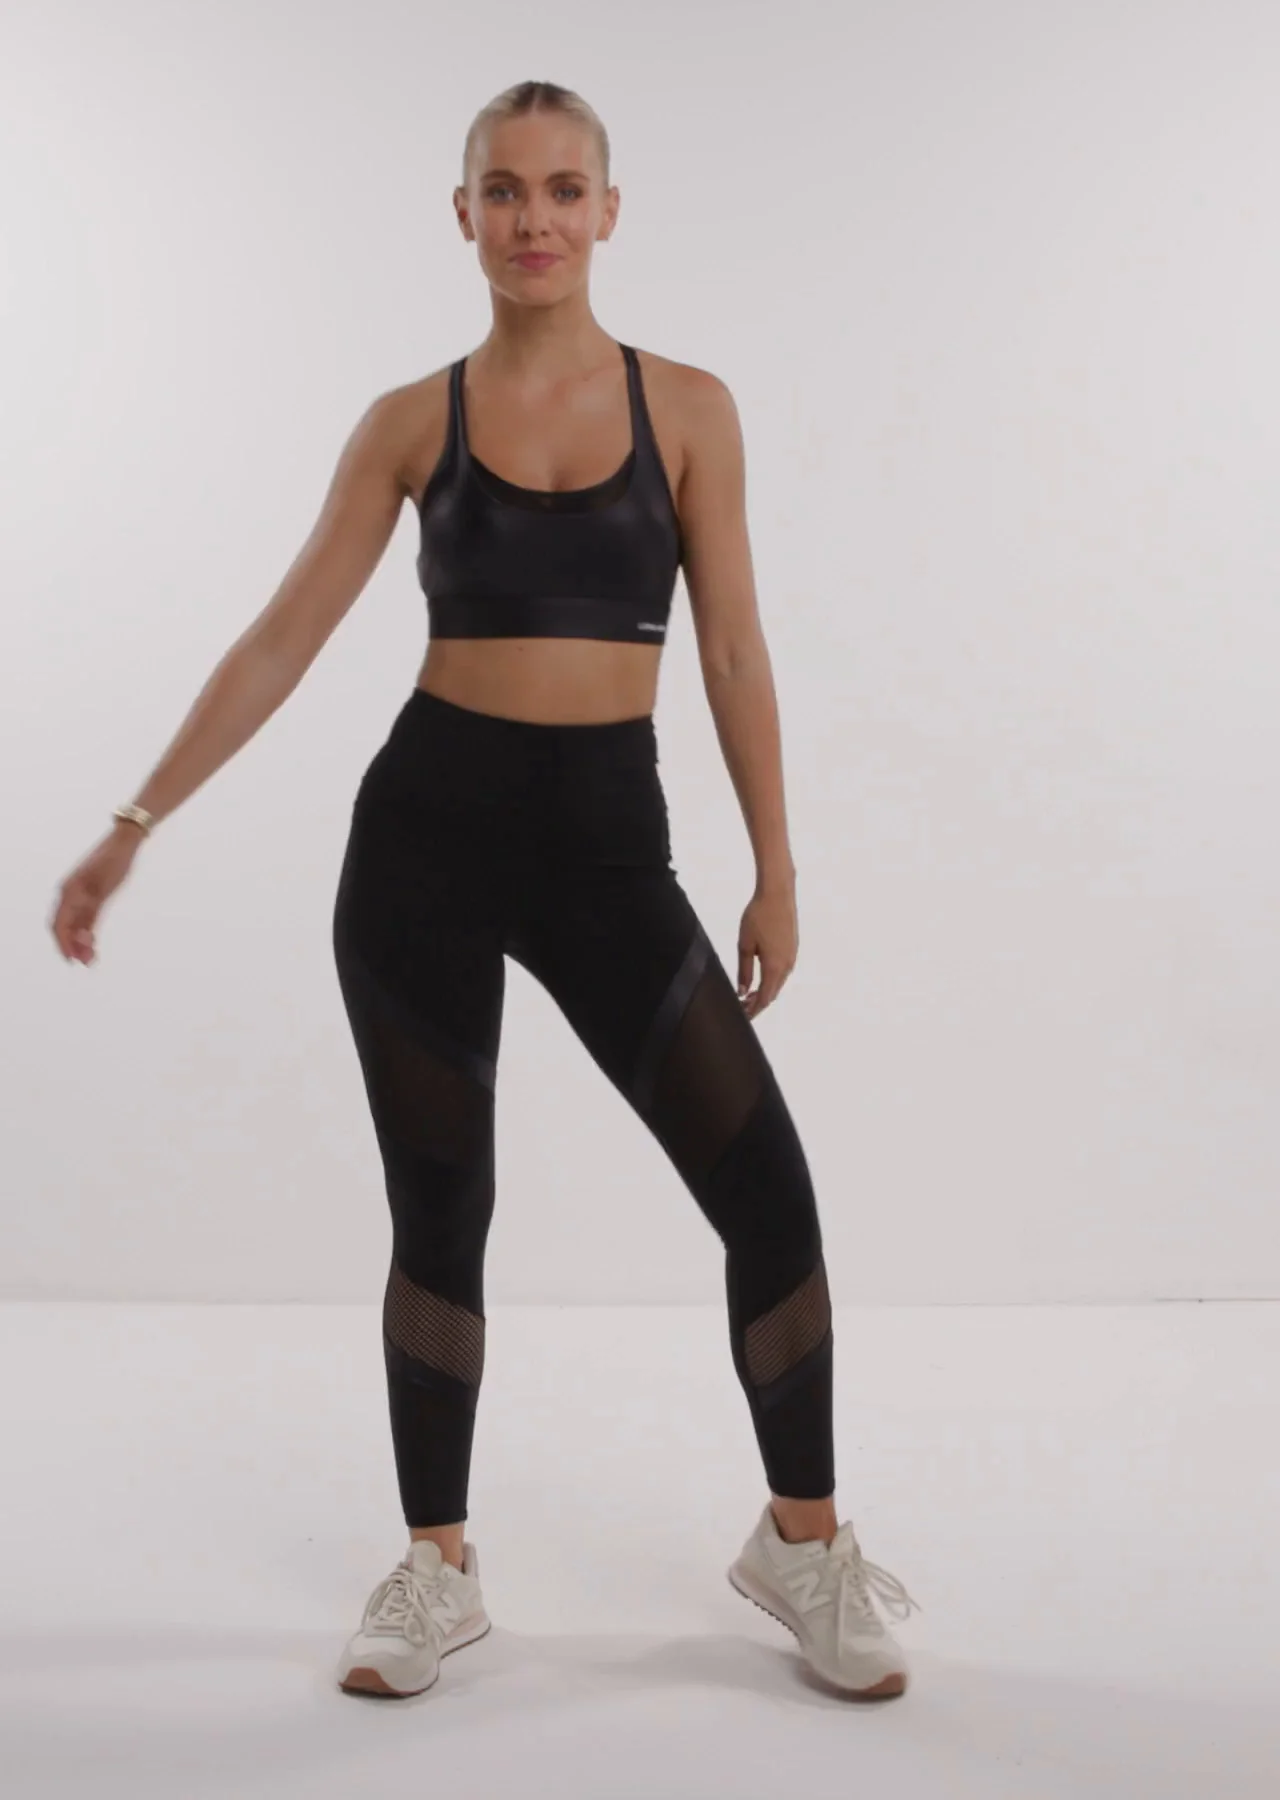 Leggings for Women Waist Pocket Pants Yoga Suckled Women Exercise